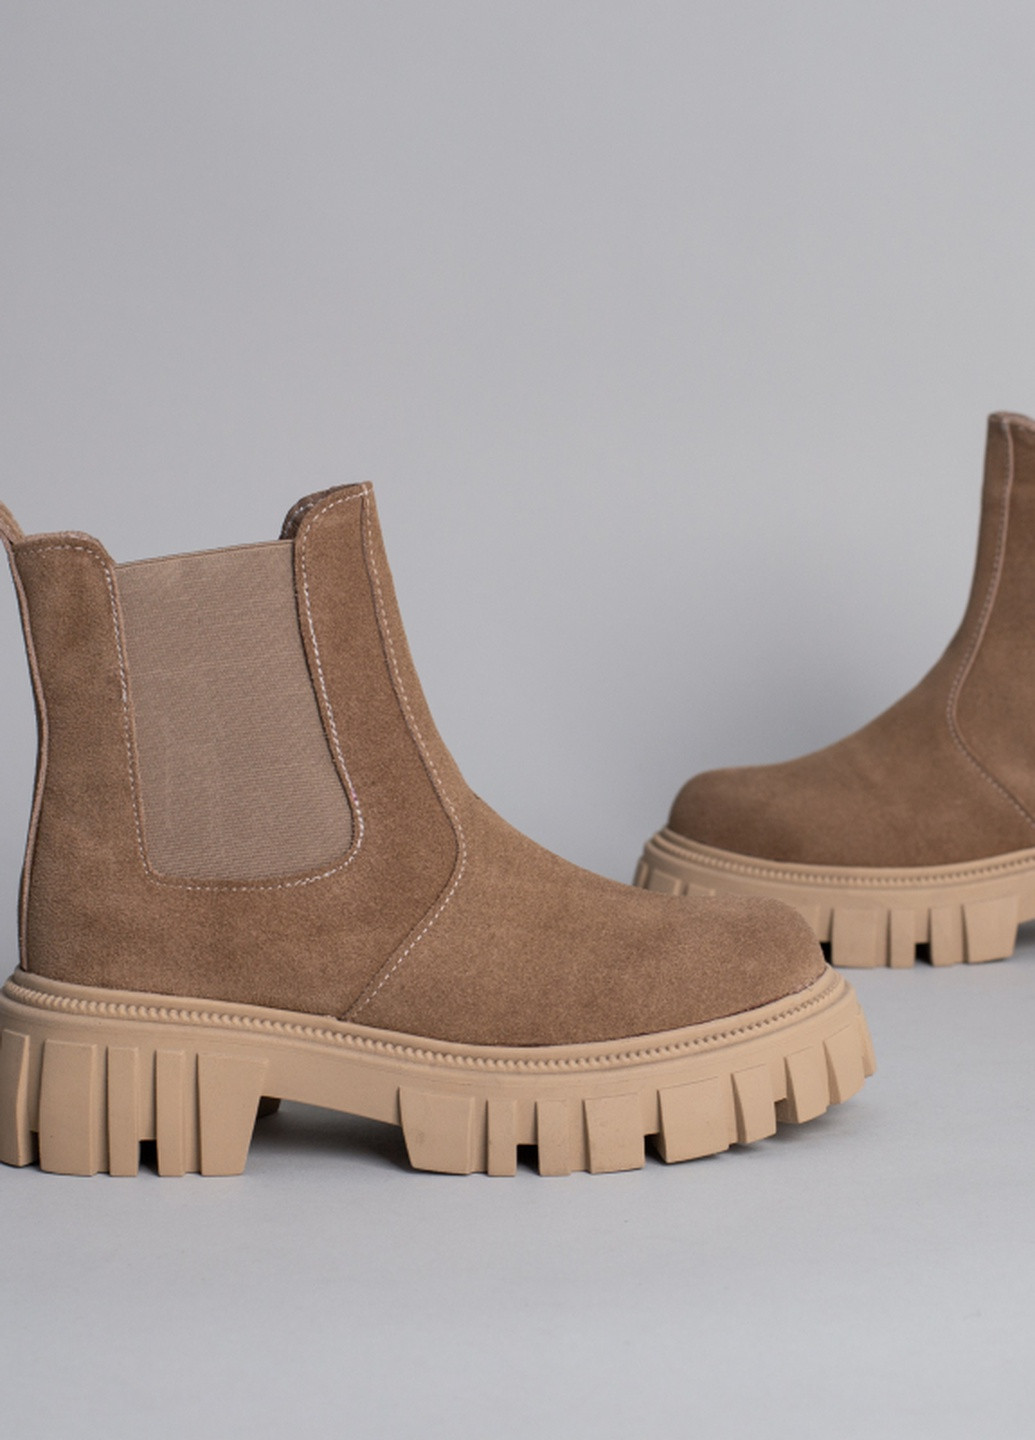 Осенние ботинки shoesband челси Brand без декора из натуральной замши